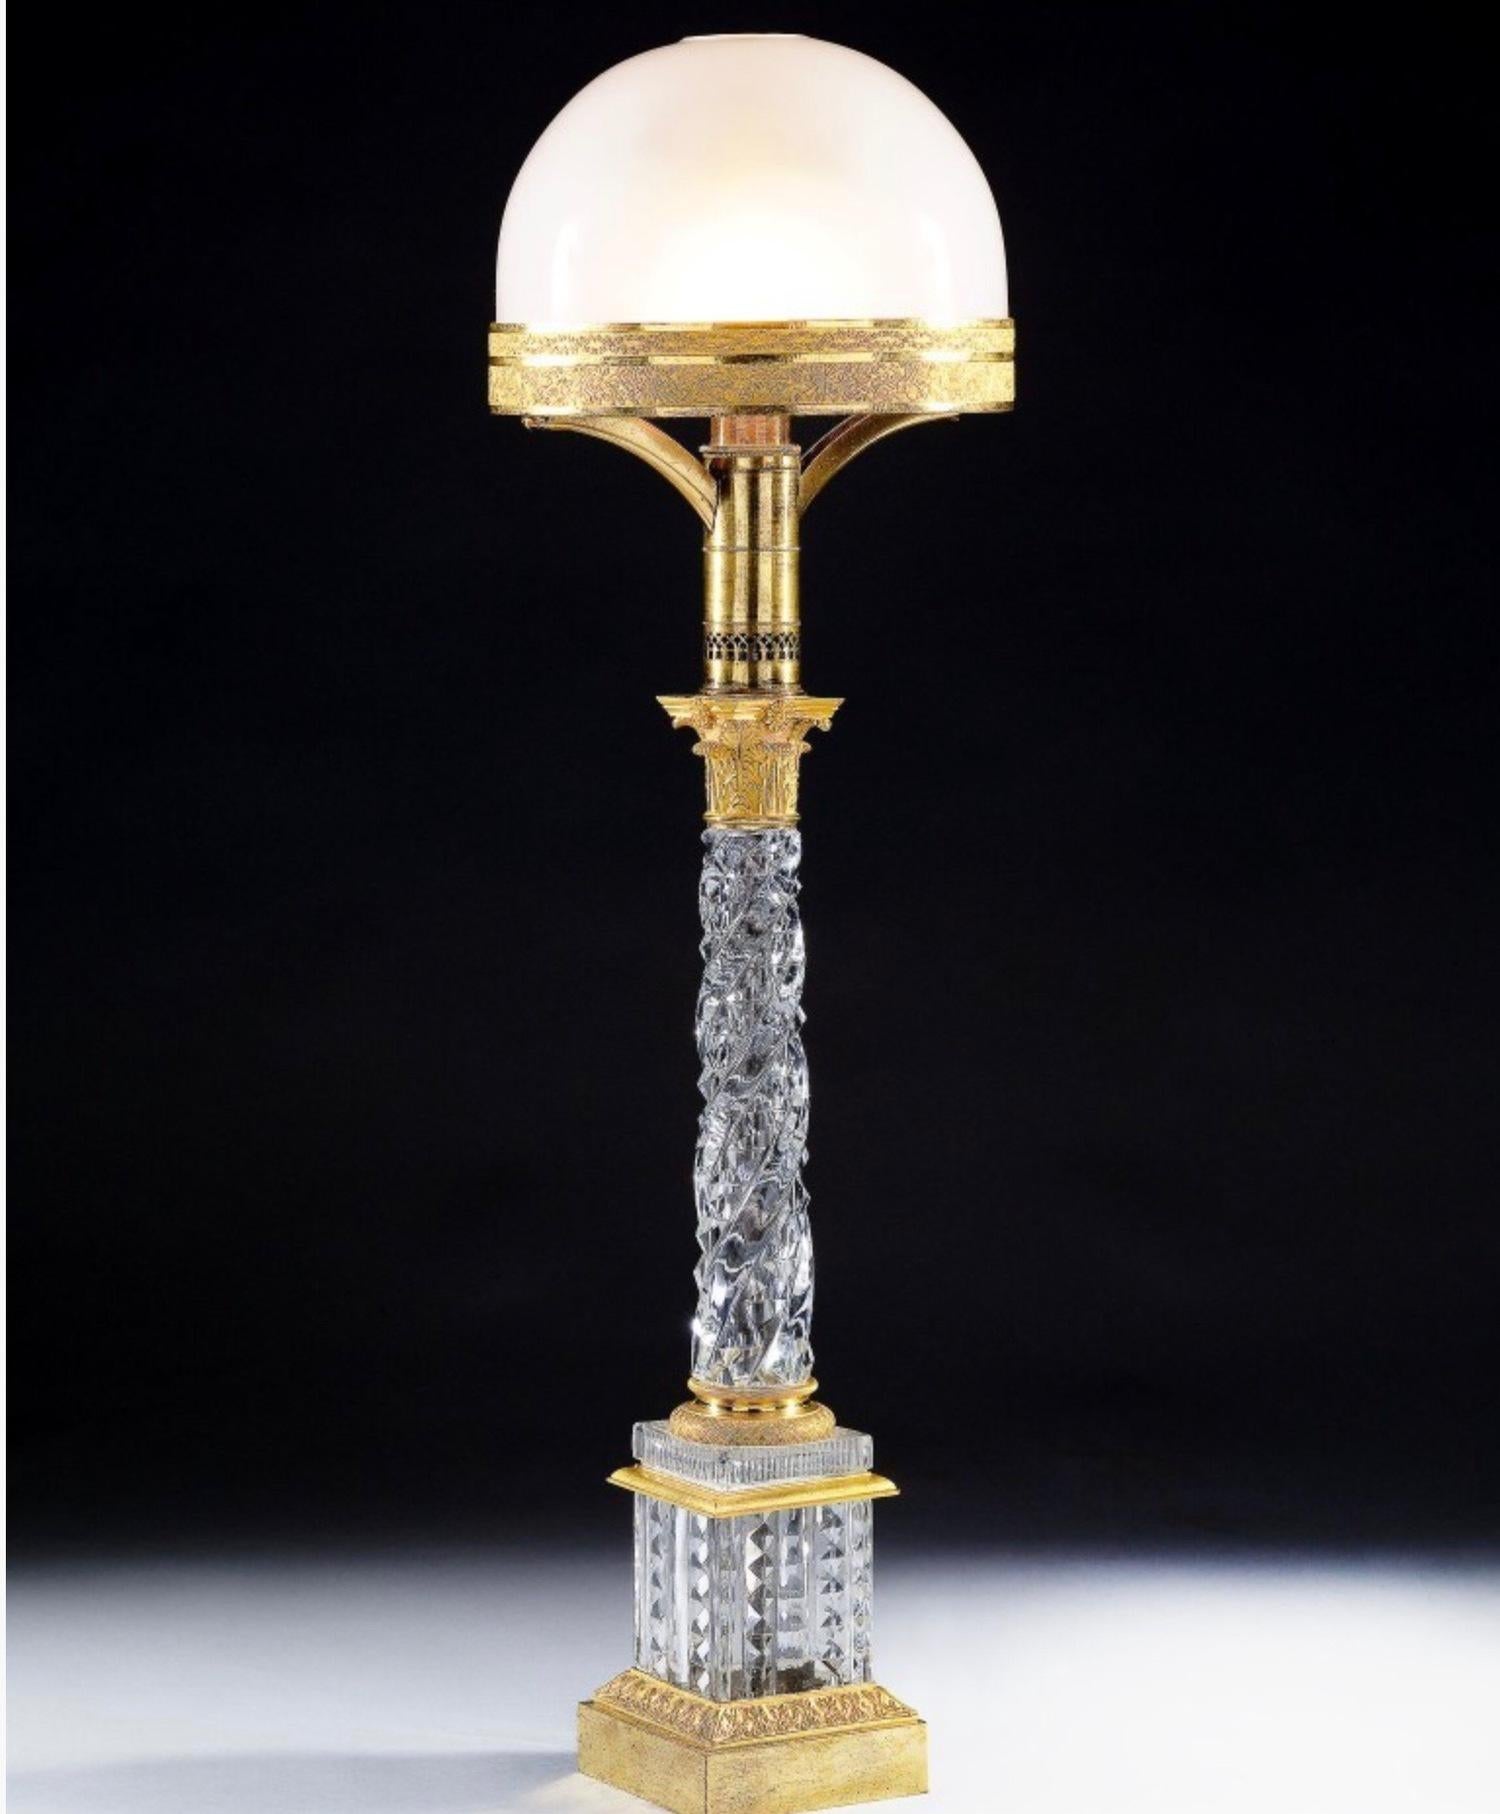 Lampe de table Baccarat en verre taillé et bronze doré

Lampe de table Charles X Baccarat en verre et bronze doré. Le verre est de la plus haute qualité ainsi que le bronze doré. ( l'abat-jour en verre est un remplacement moderne ) France circa